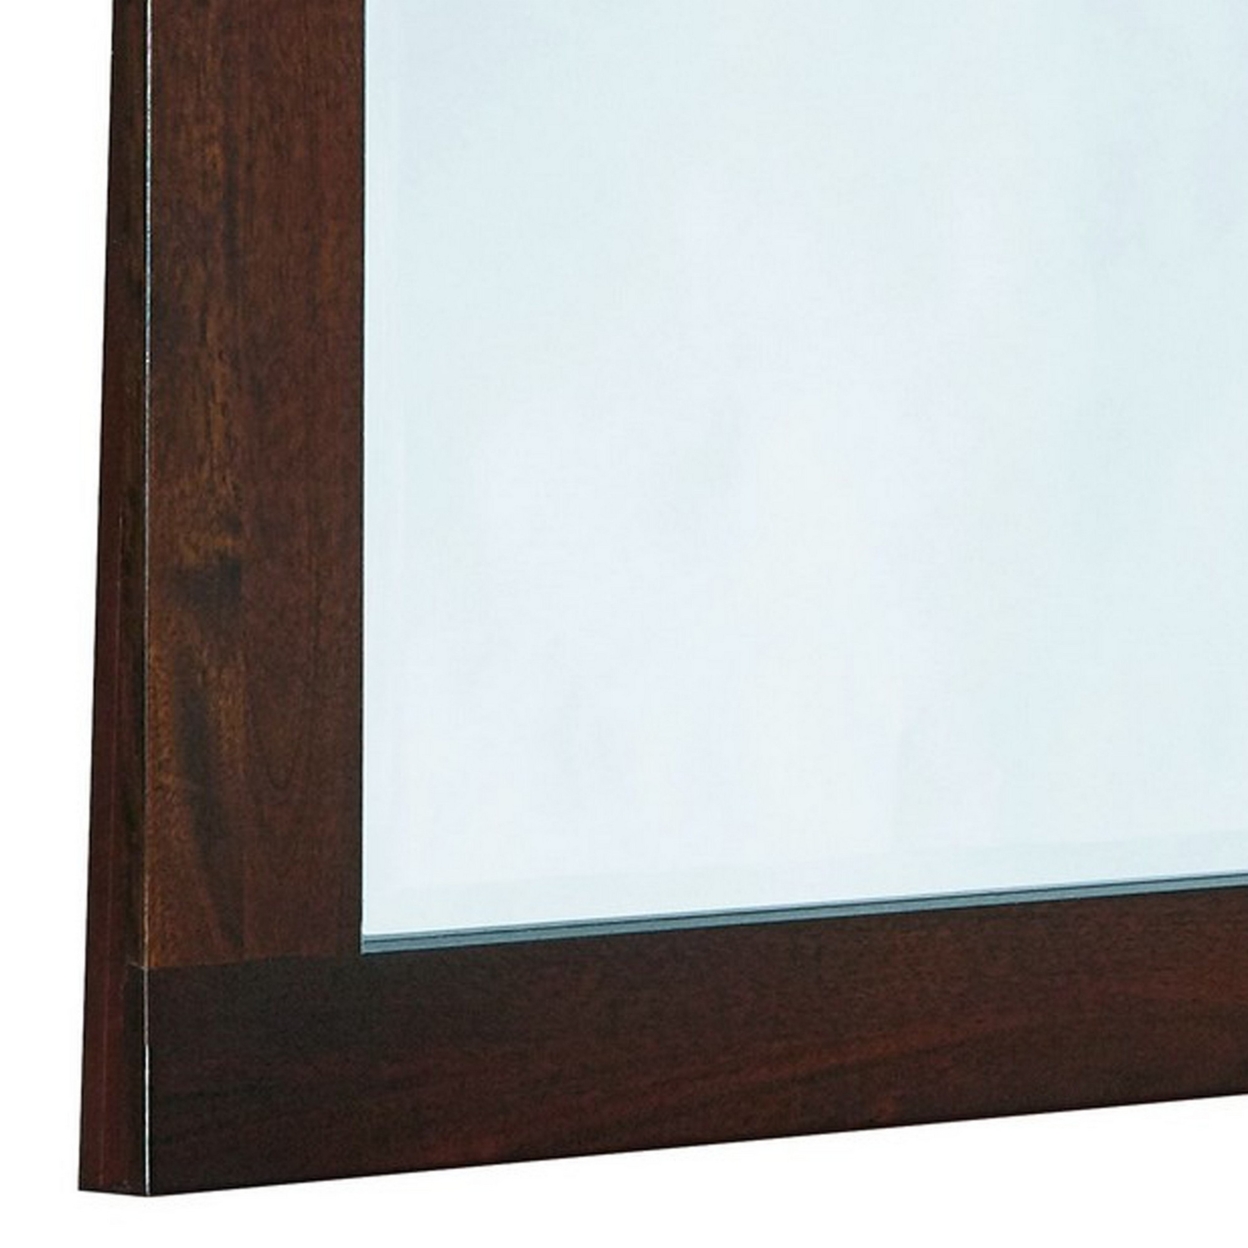 46 Inch Rectangular Arched Wooden Frame Mirror, Brown- Saltoro Sherpi